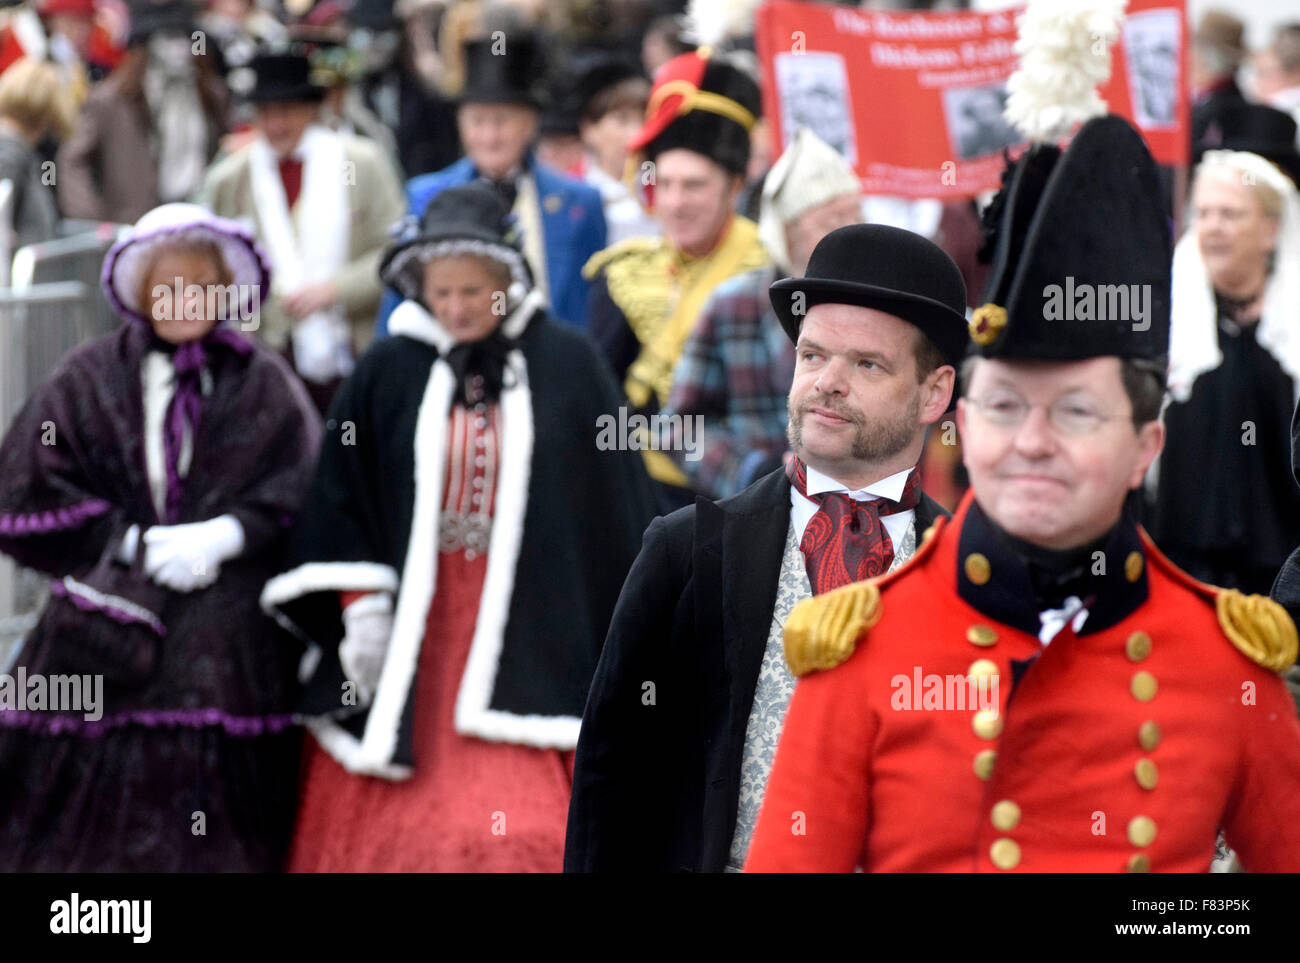 Rochester, Kent, 5. Dezember. Der erste Tag des jährlichen Dickens Christmas Festival am Wochenendes beginnt mit Paraden auf der High Street, Musik und Unterhaltung für die Tausende von Besuchern - mit einigen Kunstschnee Credit: PjrNews/Alamy Live News Stockfoto